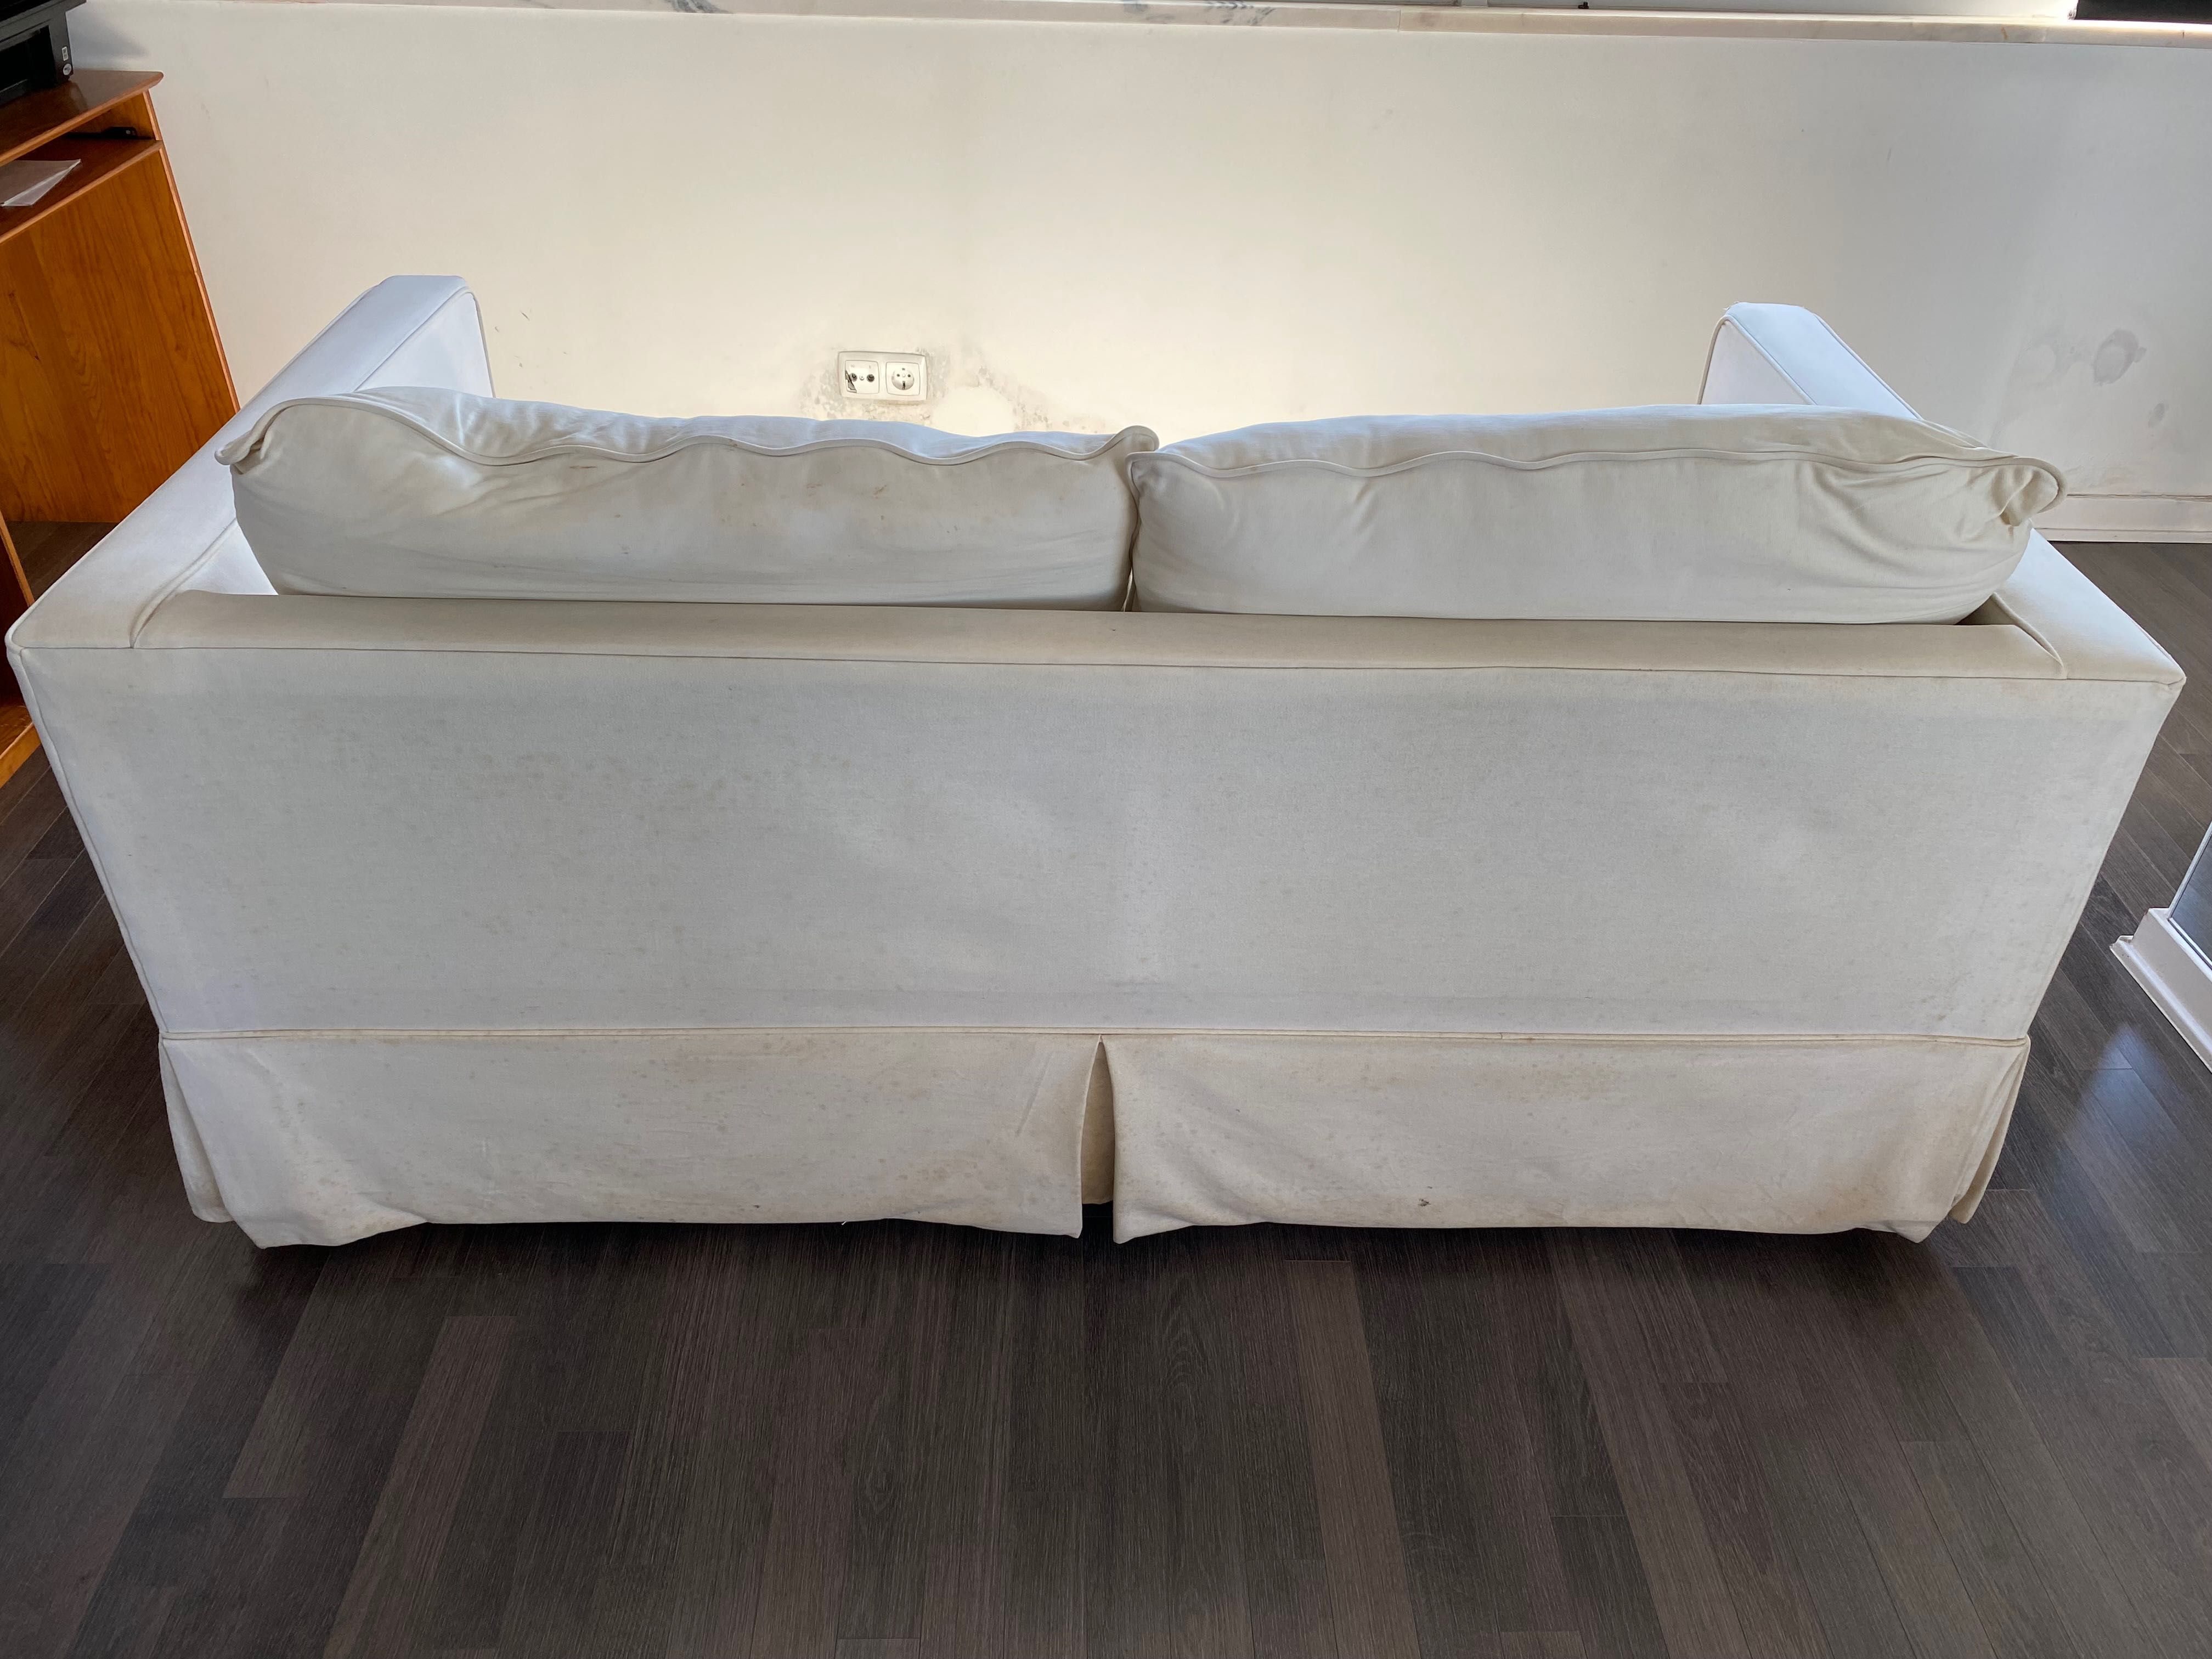 Sofá-cama usado em bom estado